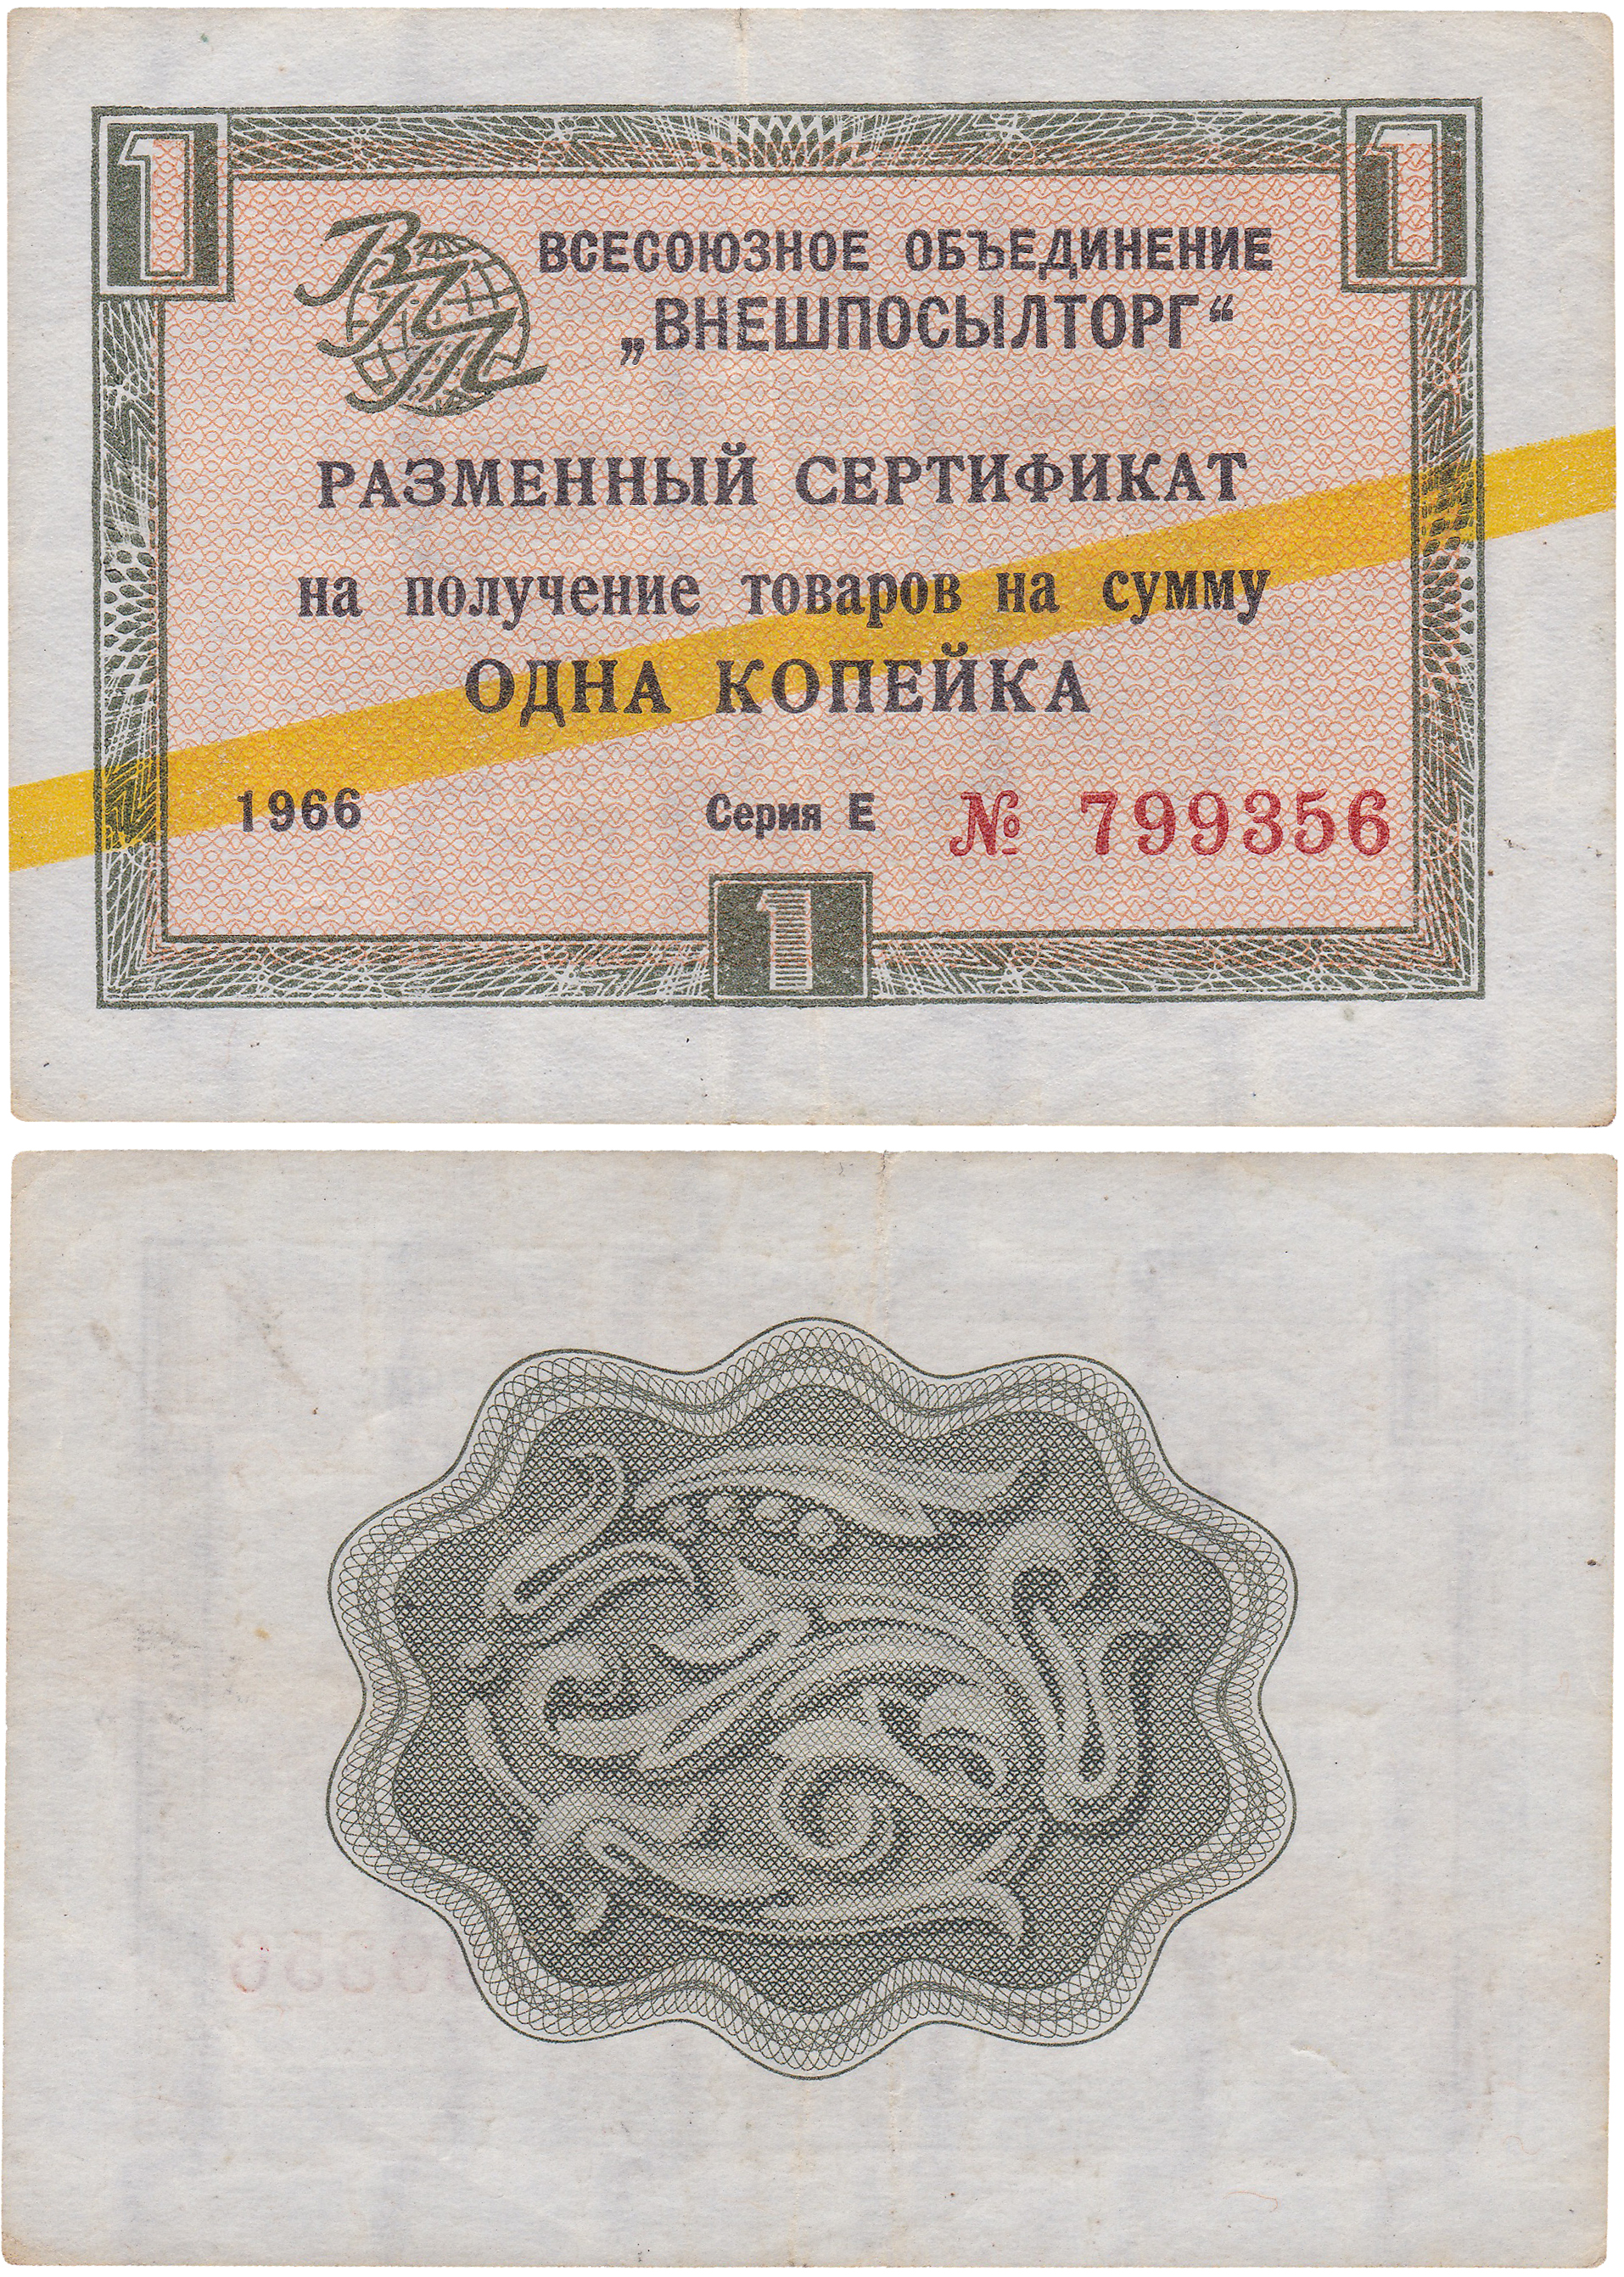 Разменный сертификат на получение товаров на сумму 1 Копейка 1966 год. Всесоюзное объединение Внешпосылторг. Жёлтая полоса. Серия Д